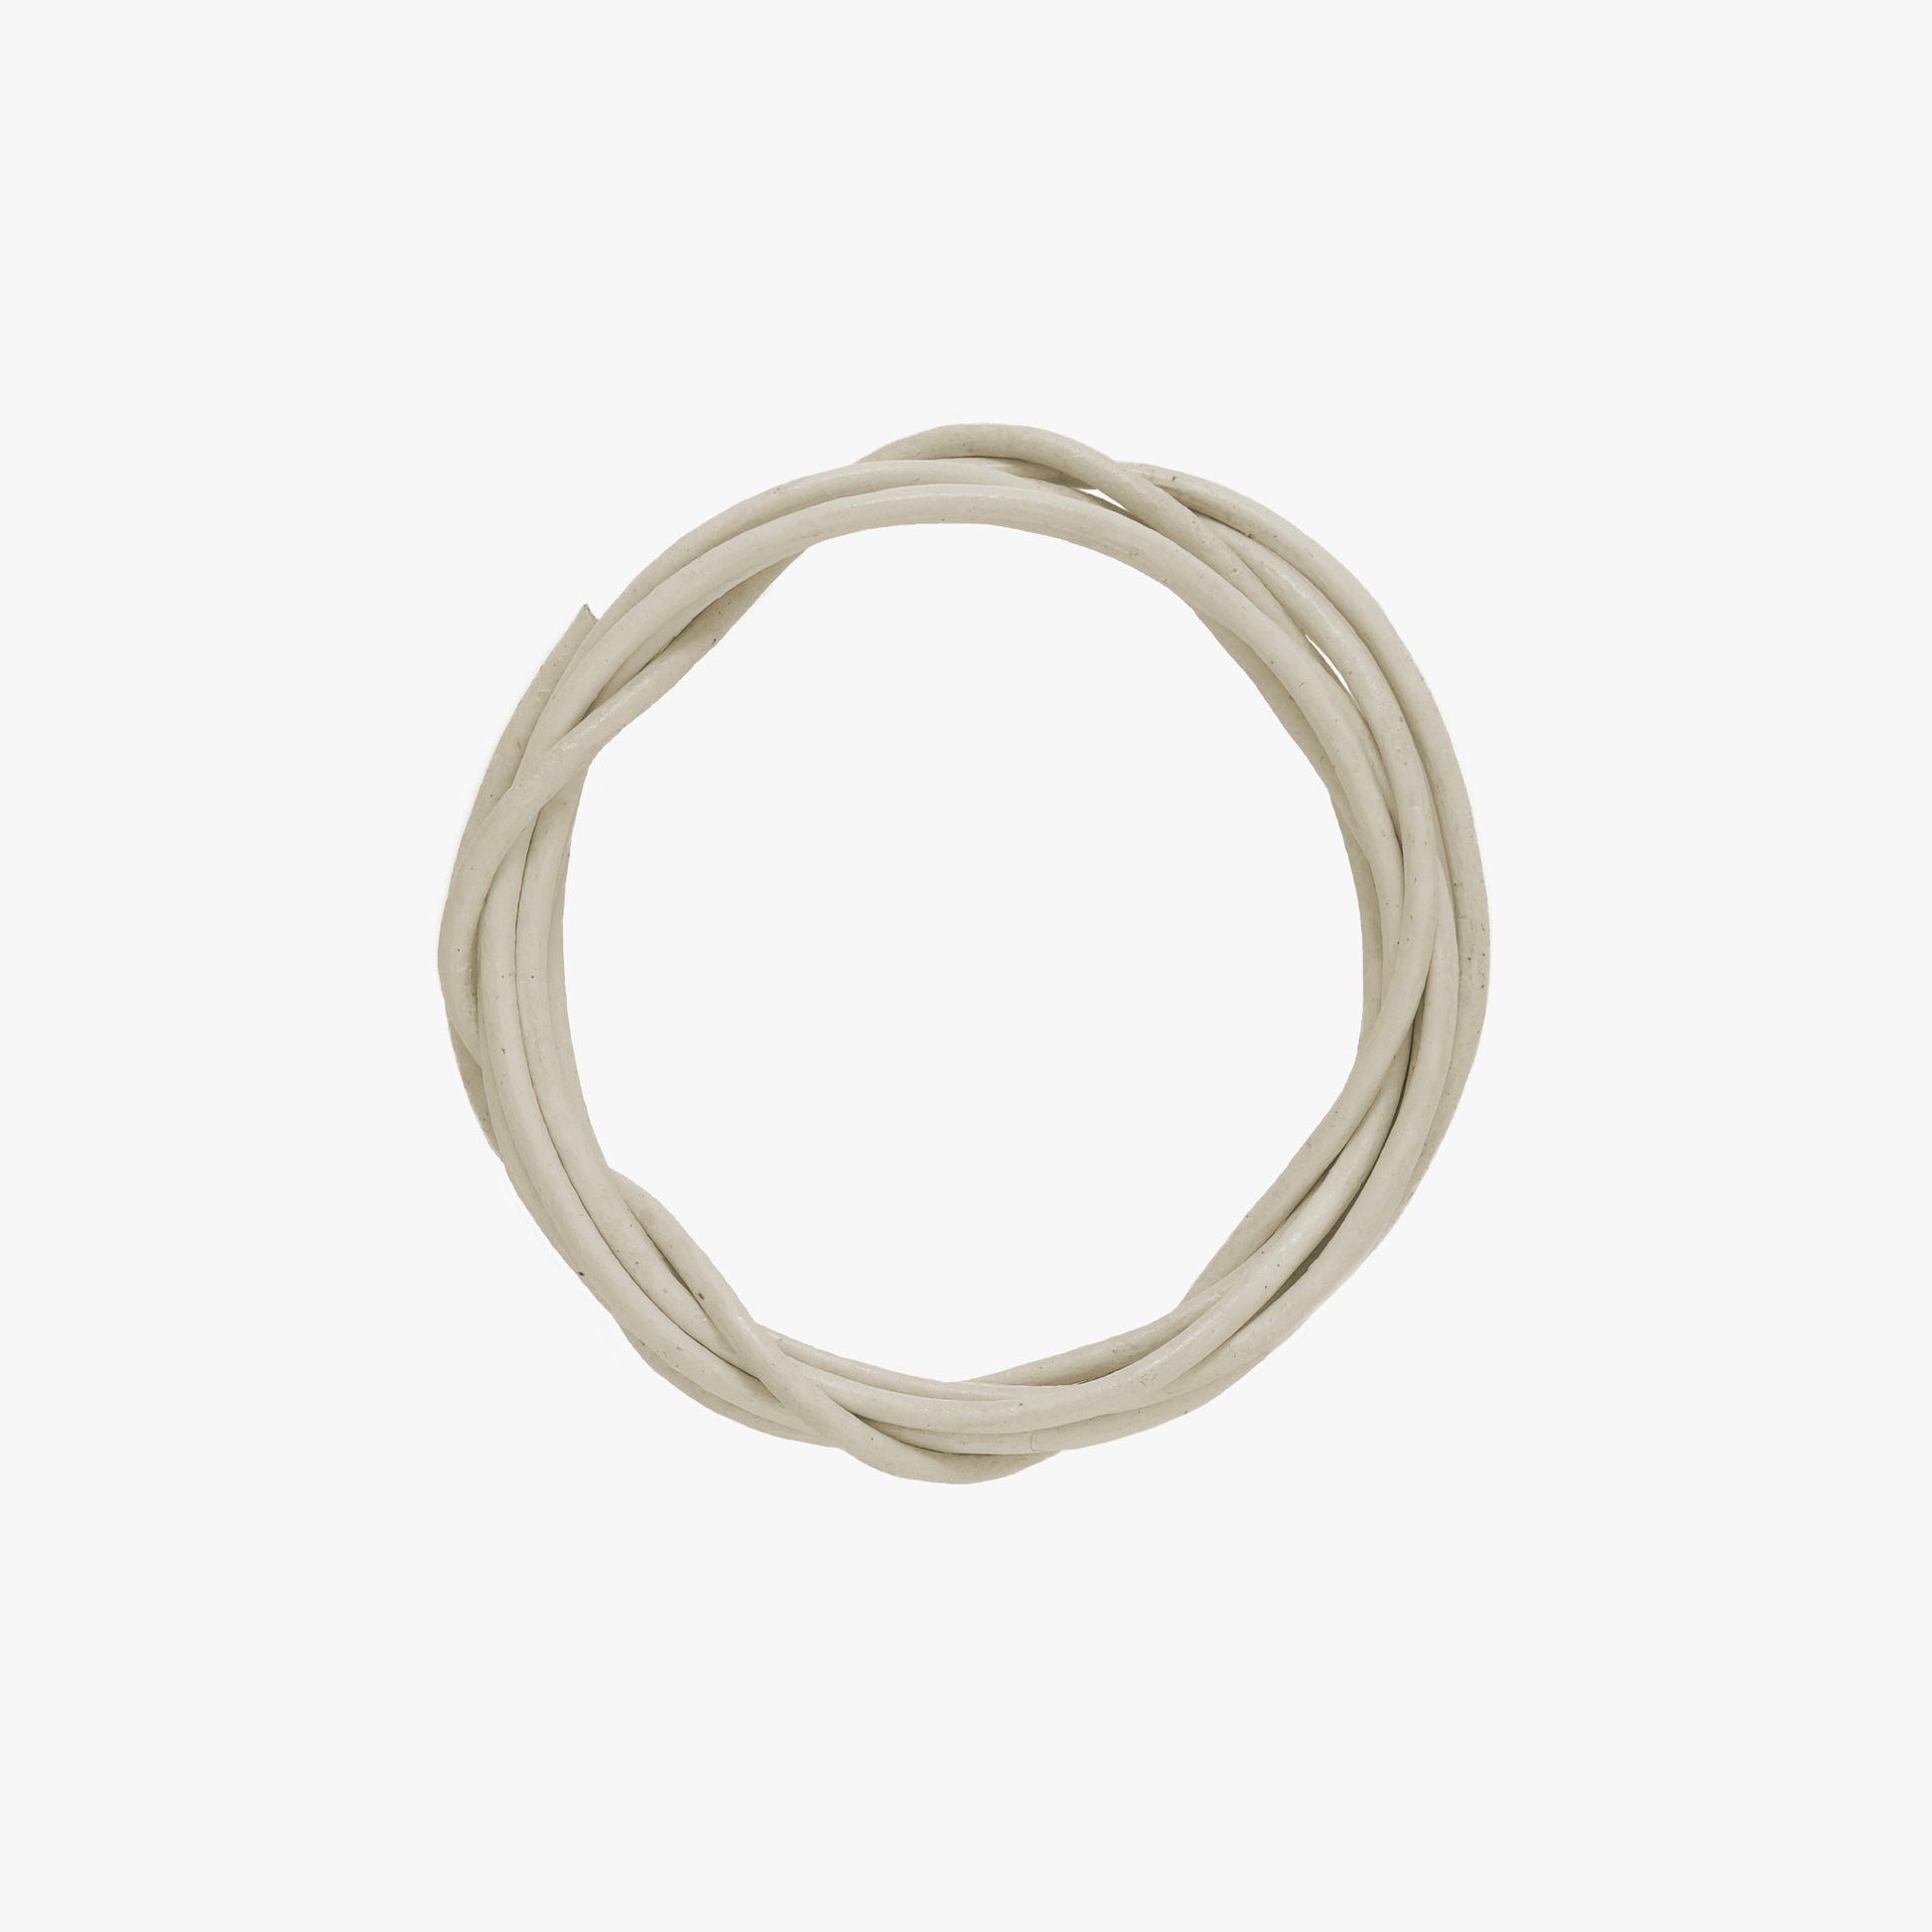 Lederschnur für Pamoro Loops und Schmuck Anhänger - echtes Leder in der Farbe elfenbein - 1,5 Rundriemen